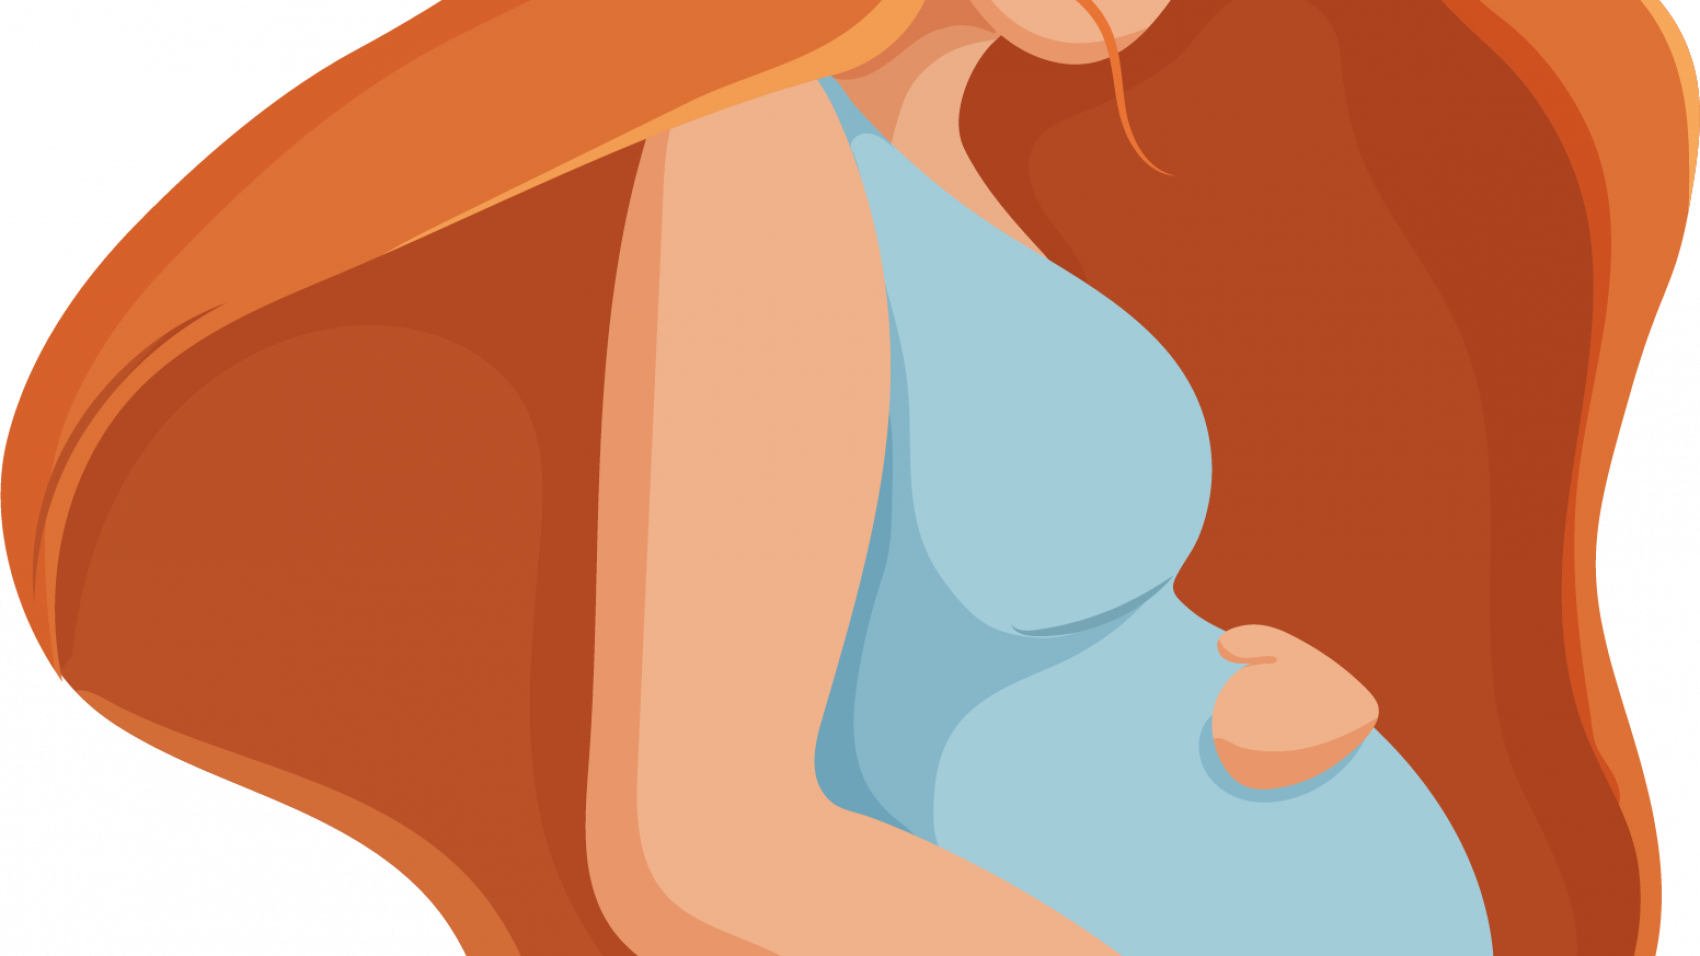 آمنیوسنتز یک آزمایش پیش از تولد است که برای مادران بارداری که ریسک بالاتری برای به دنیا آوردن نوزاد ناقص داشته باشند، انجام می شود. این آزمایش بر روی مایع آمنیون (مایع داخل کیسه ی اطراف جنین) انجام می شود.